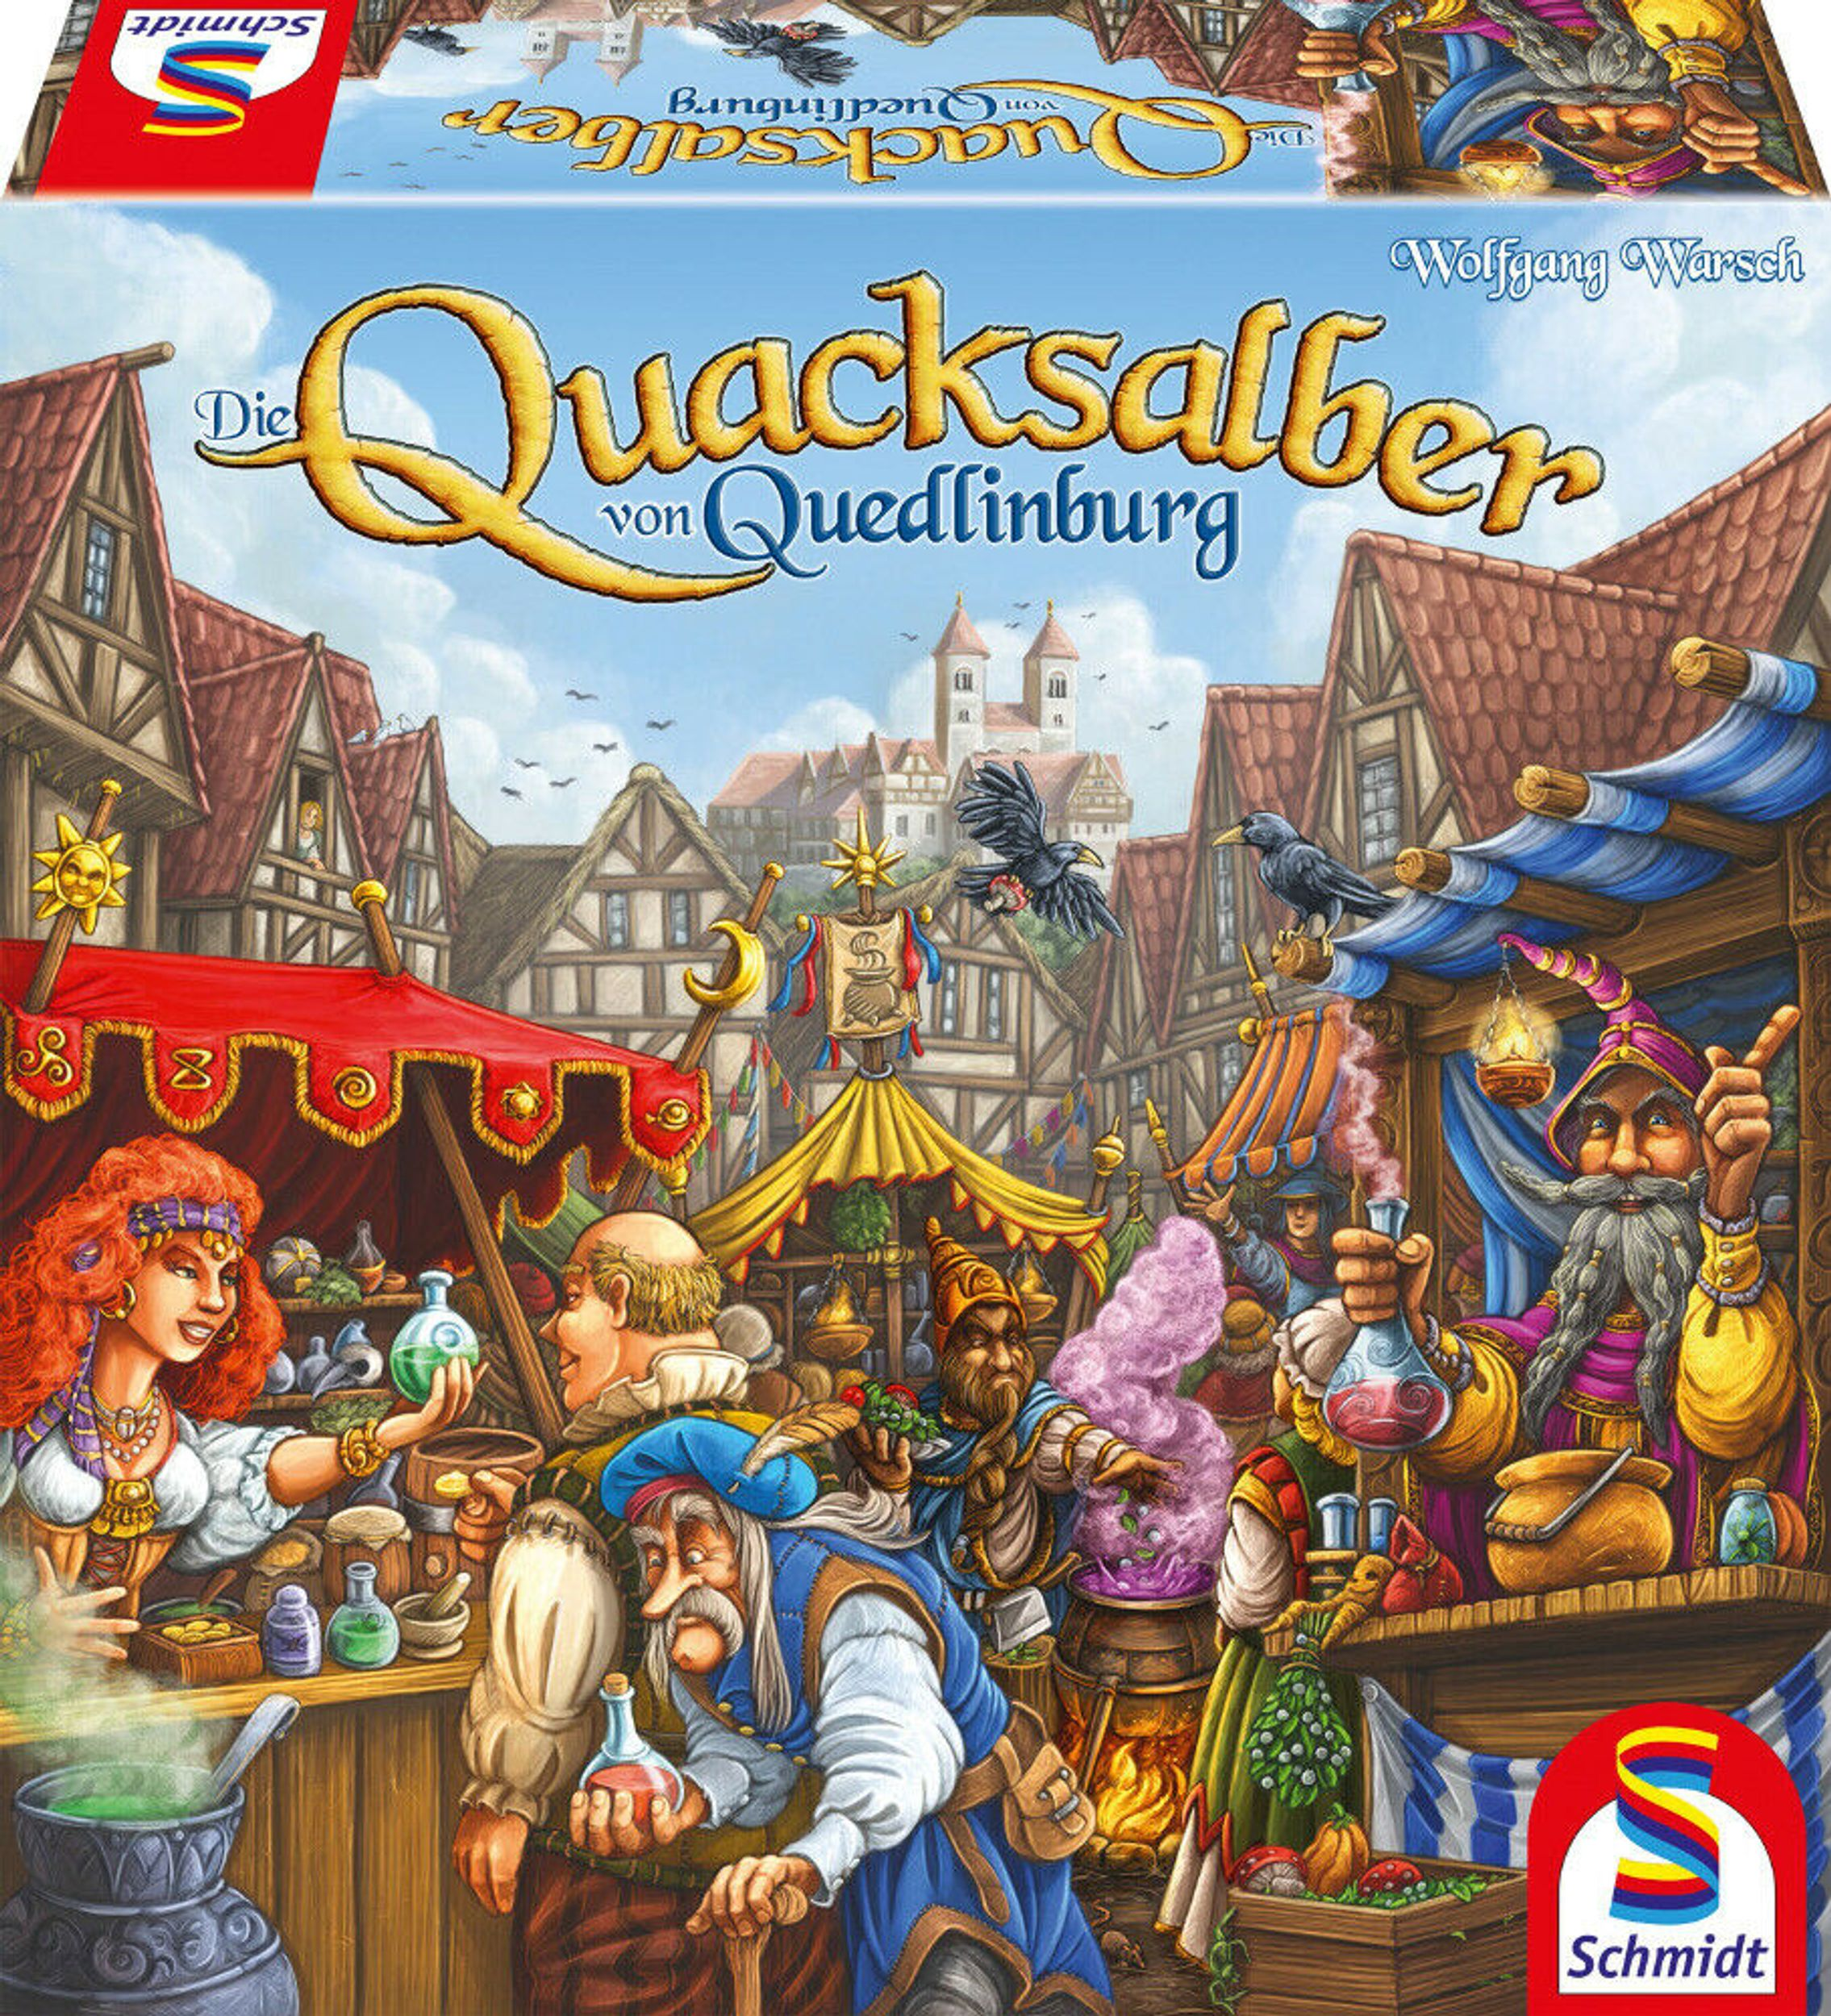 Gesellschaftsspiel von Quacksalber Quedlinburg Die SCHMIDT SPIELE